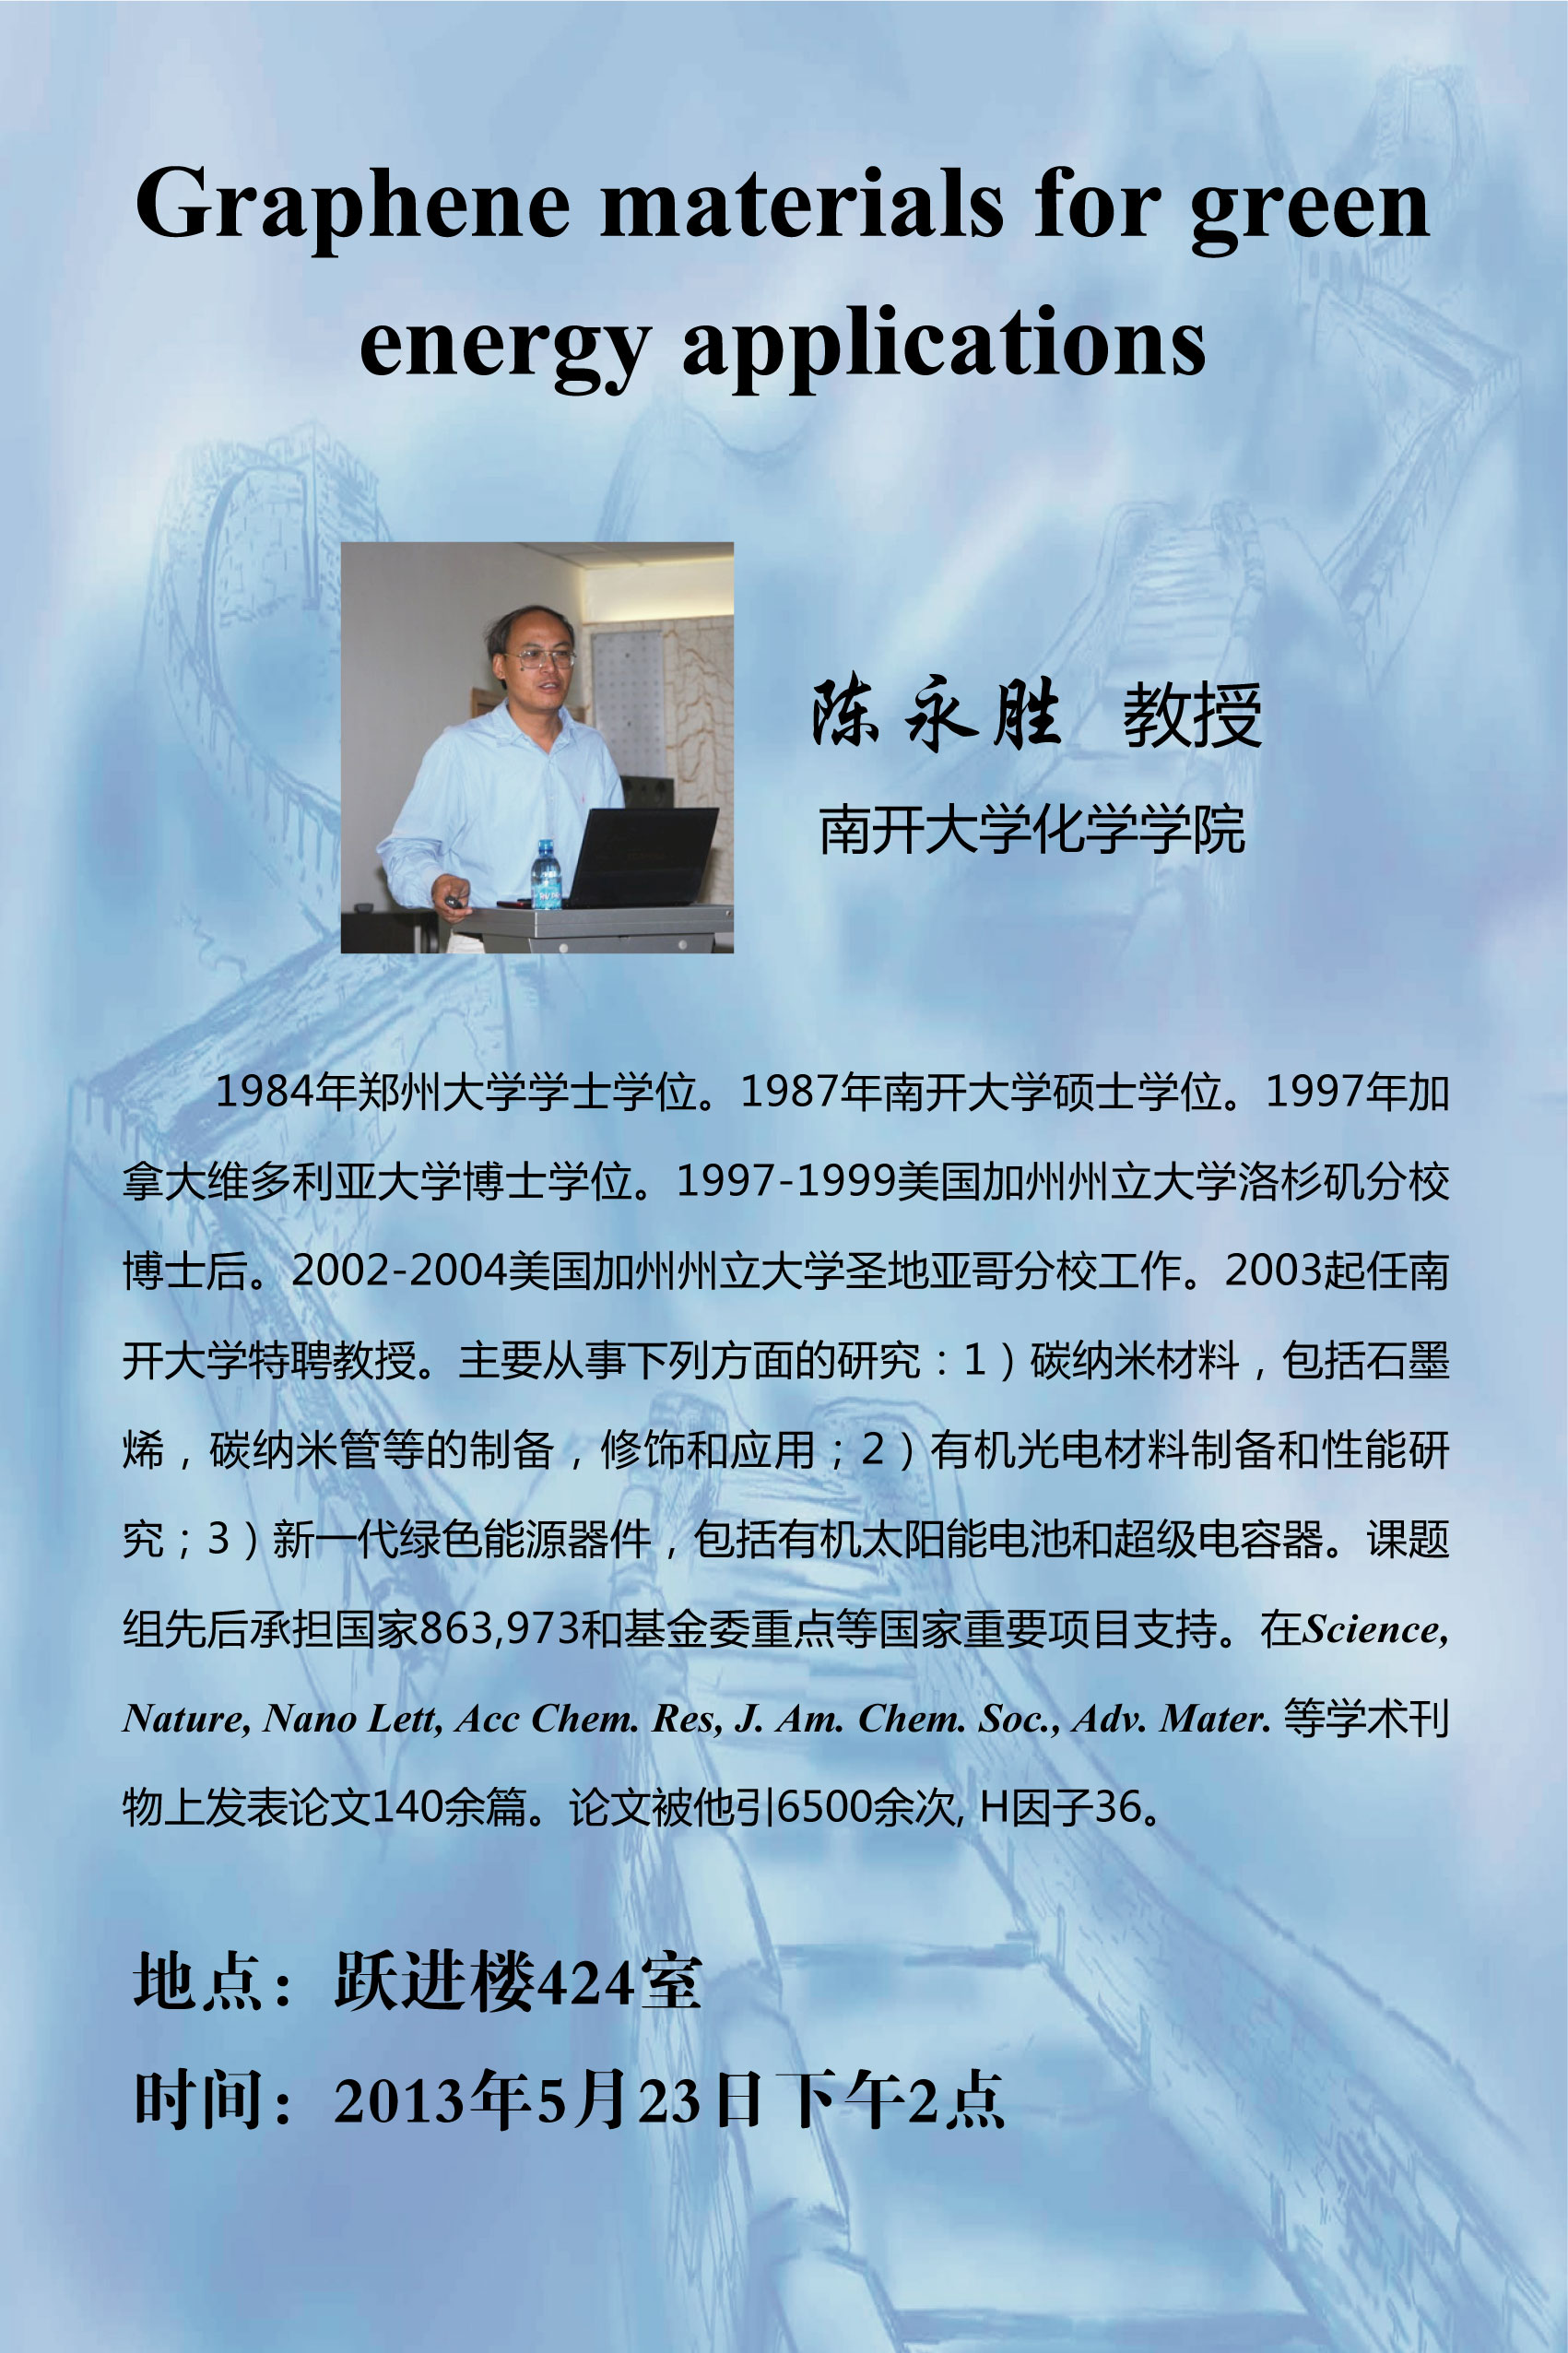 学术报告海报-Chen YS-5-23.jpg